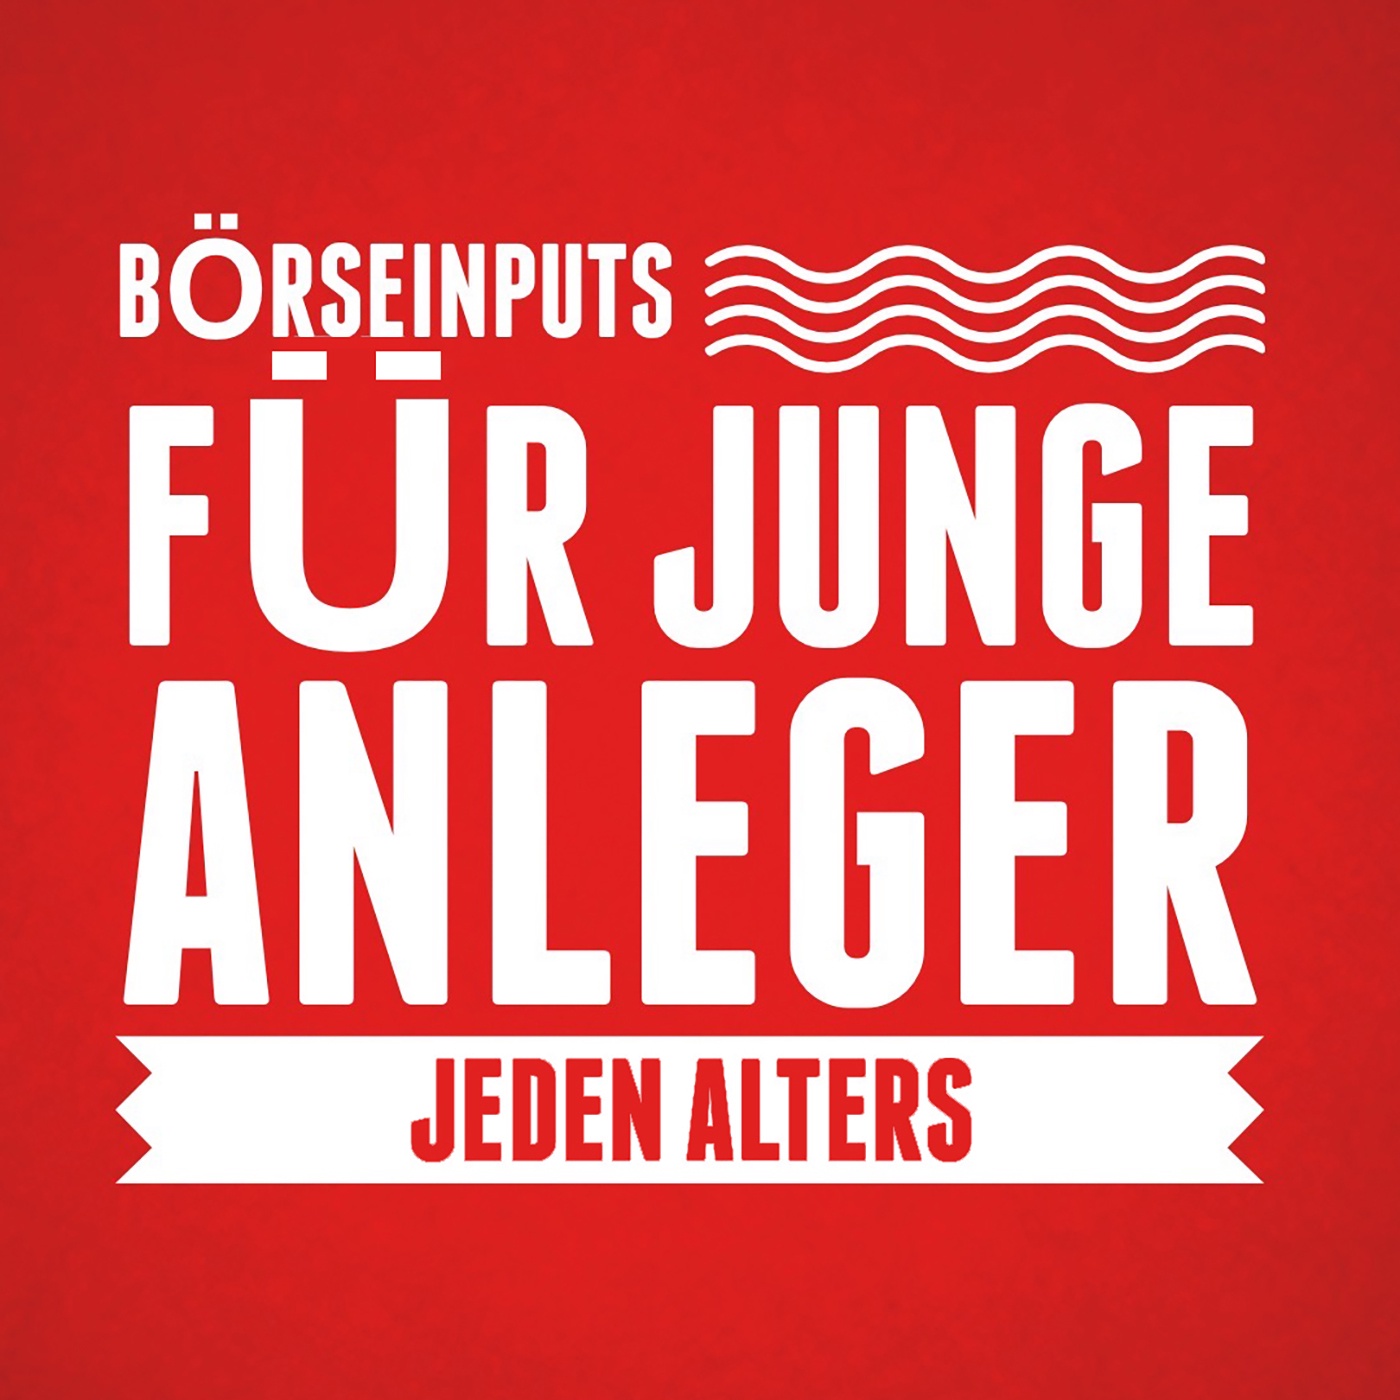 Audio-CD.at Indie Podcasts: Wiener Börse, Sport, Musik (und mehr)